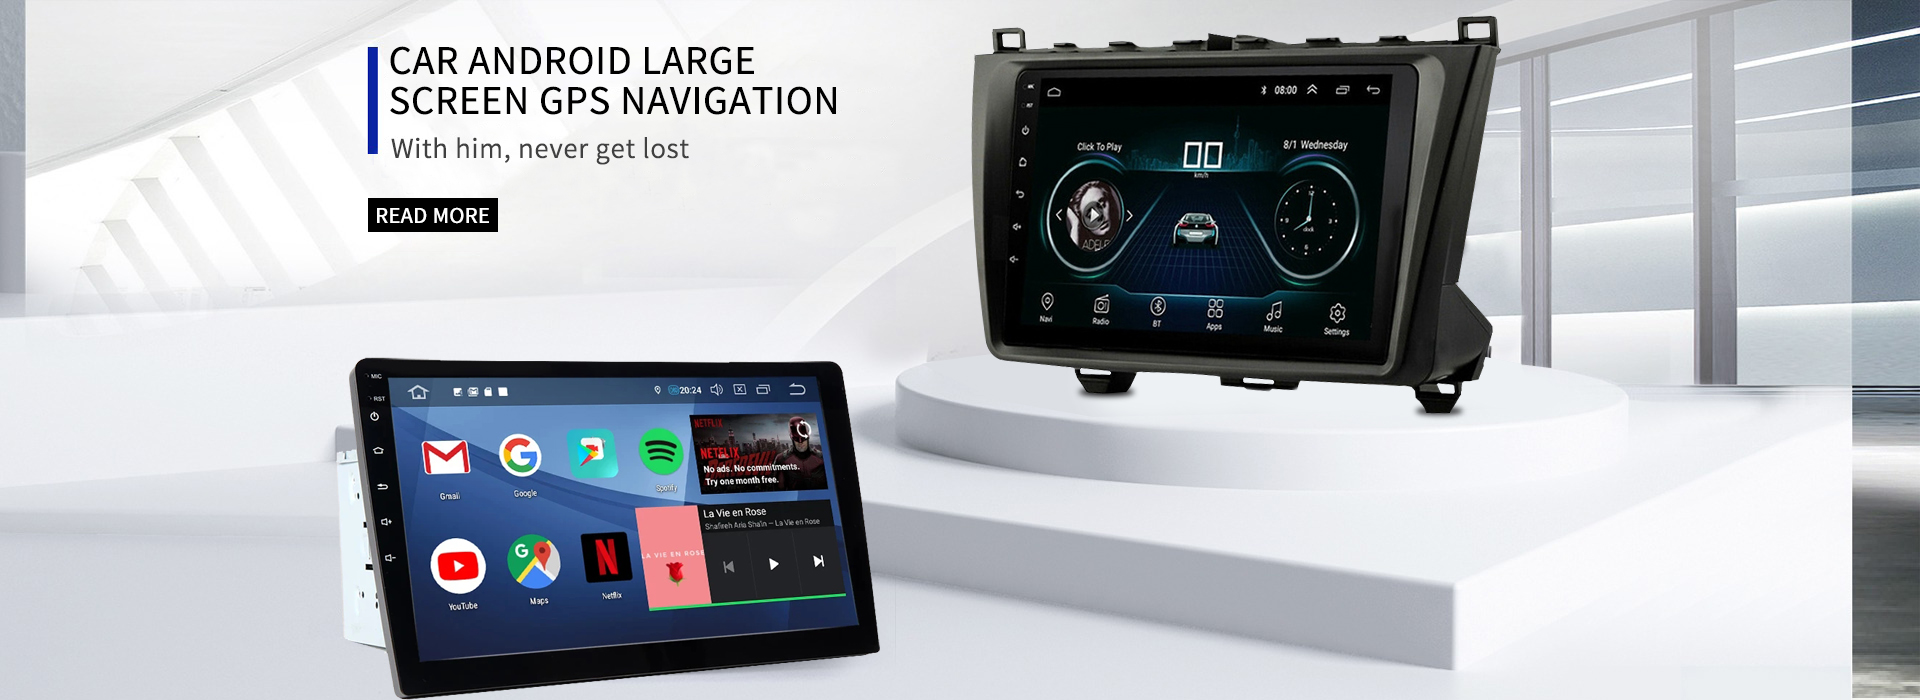 Navegación GPS de pantalla grande para coche Android